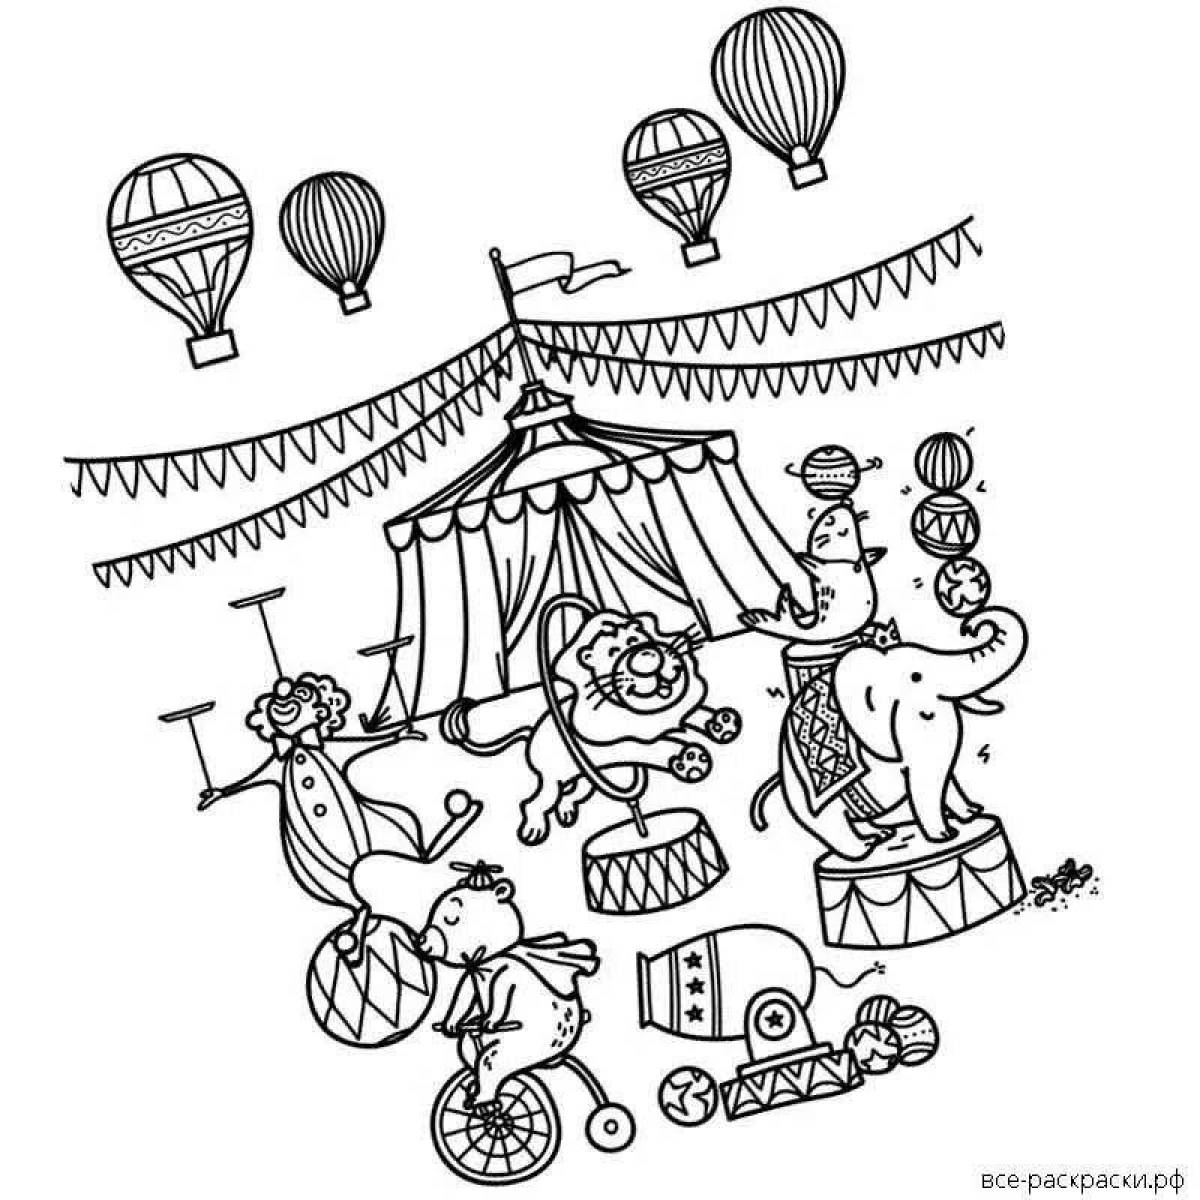 Выдающаяся цирковая раскраска для детей 6-7 лет